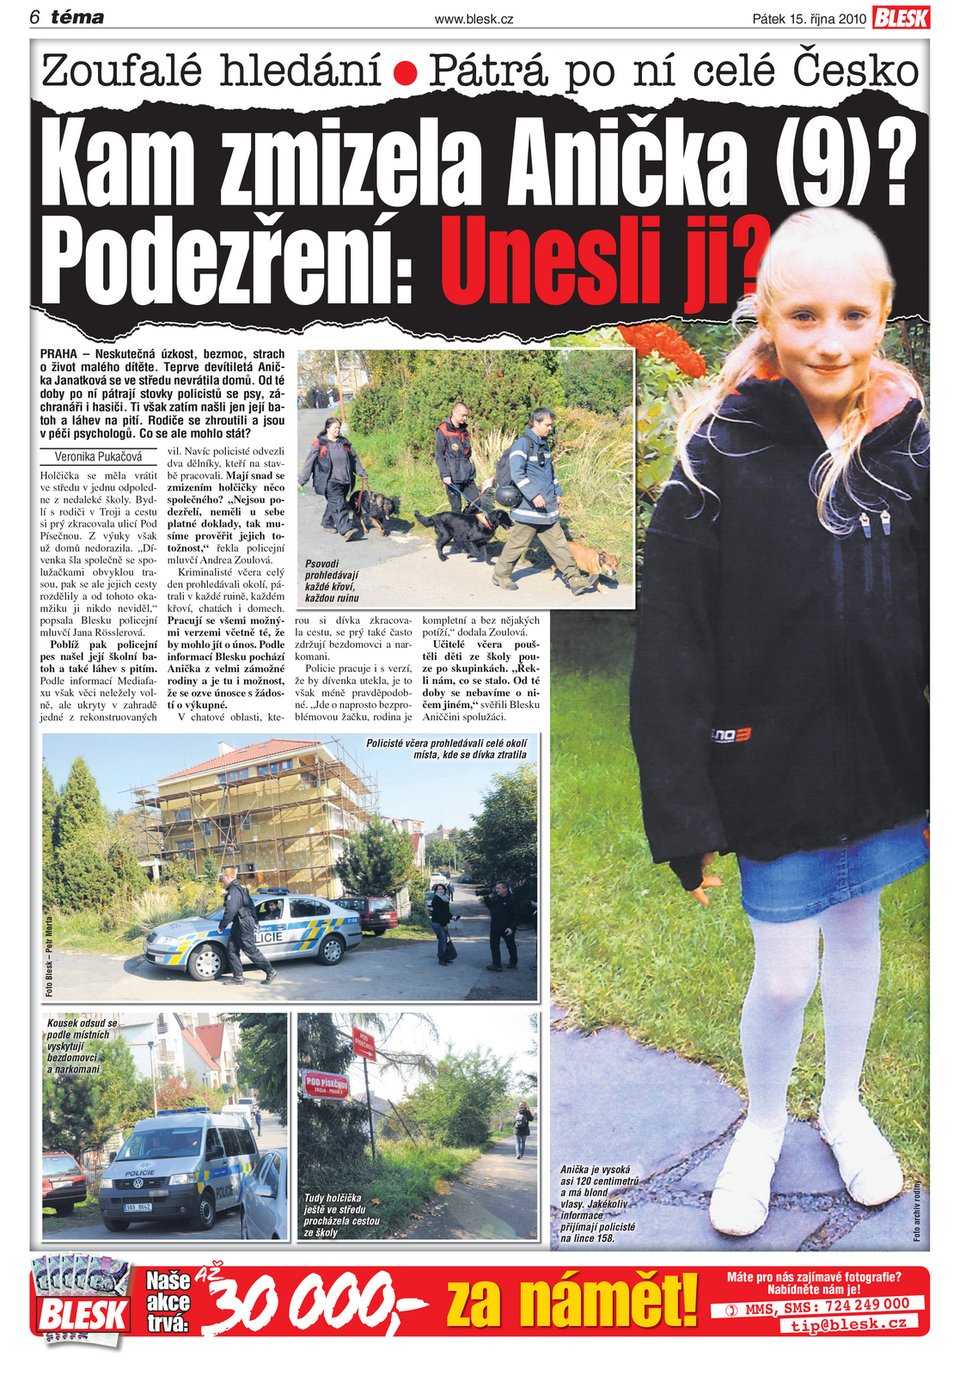 Rok 2010 - Českem otřásla kauza ztracené školačky Aničky Janatkové, jejíž tělo bylo nalezeno po pěti měsících pohřešování